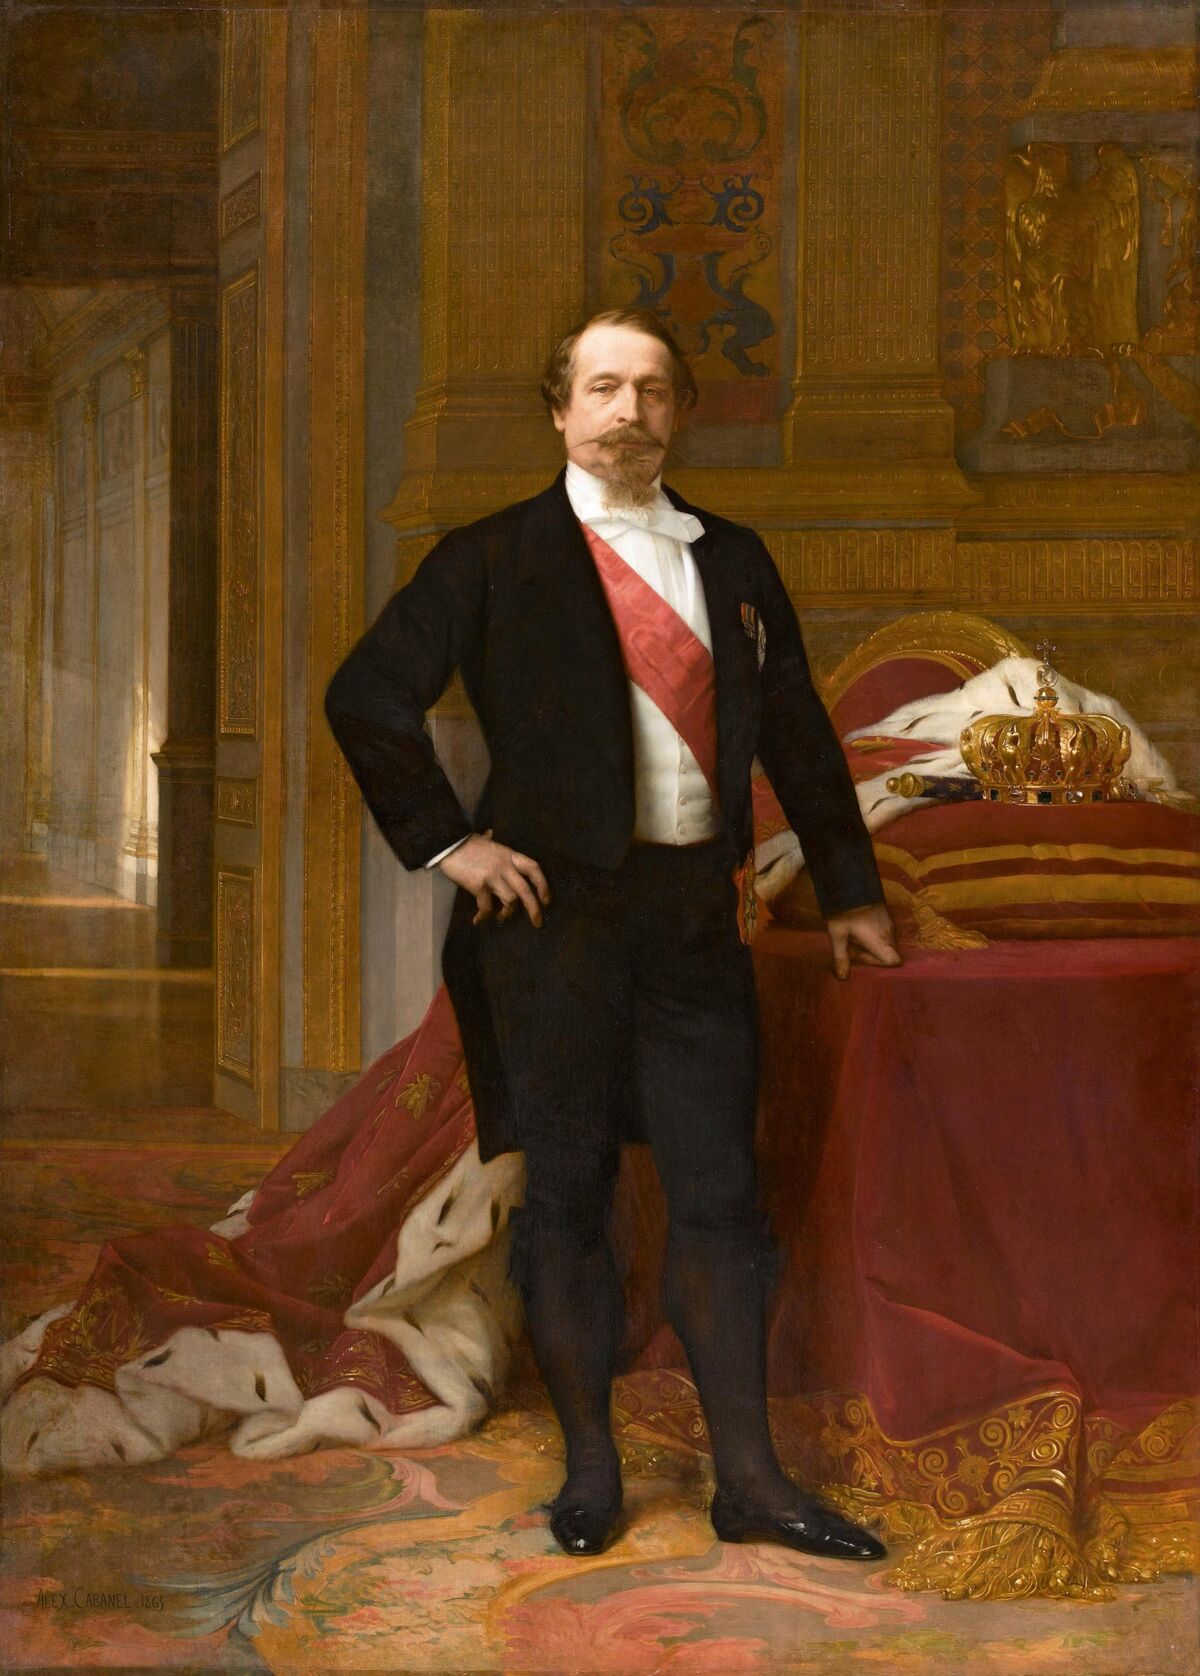 GFD 1/31: Napoleon III. von Frankreich (Portrait von Alexandre Cabanel, um 1865)